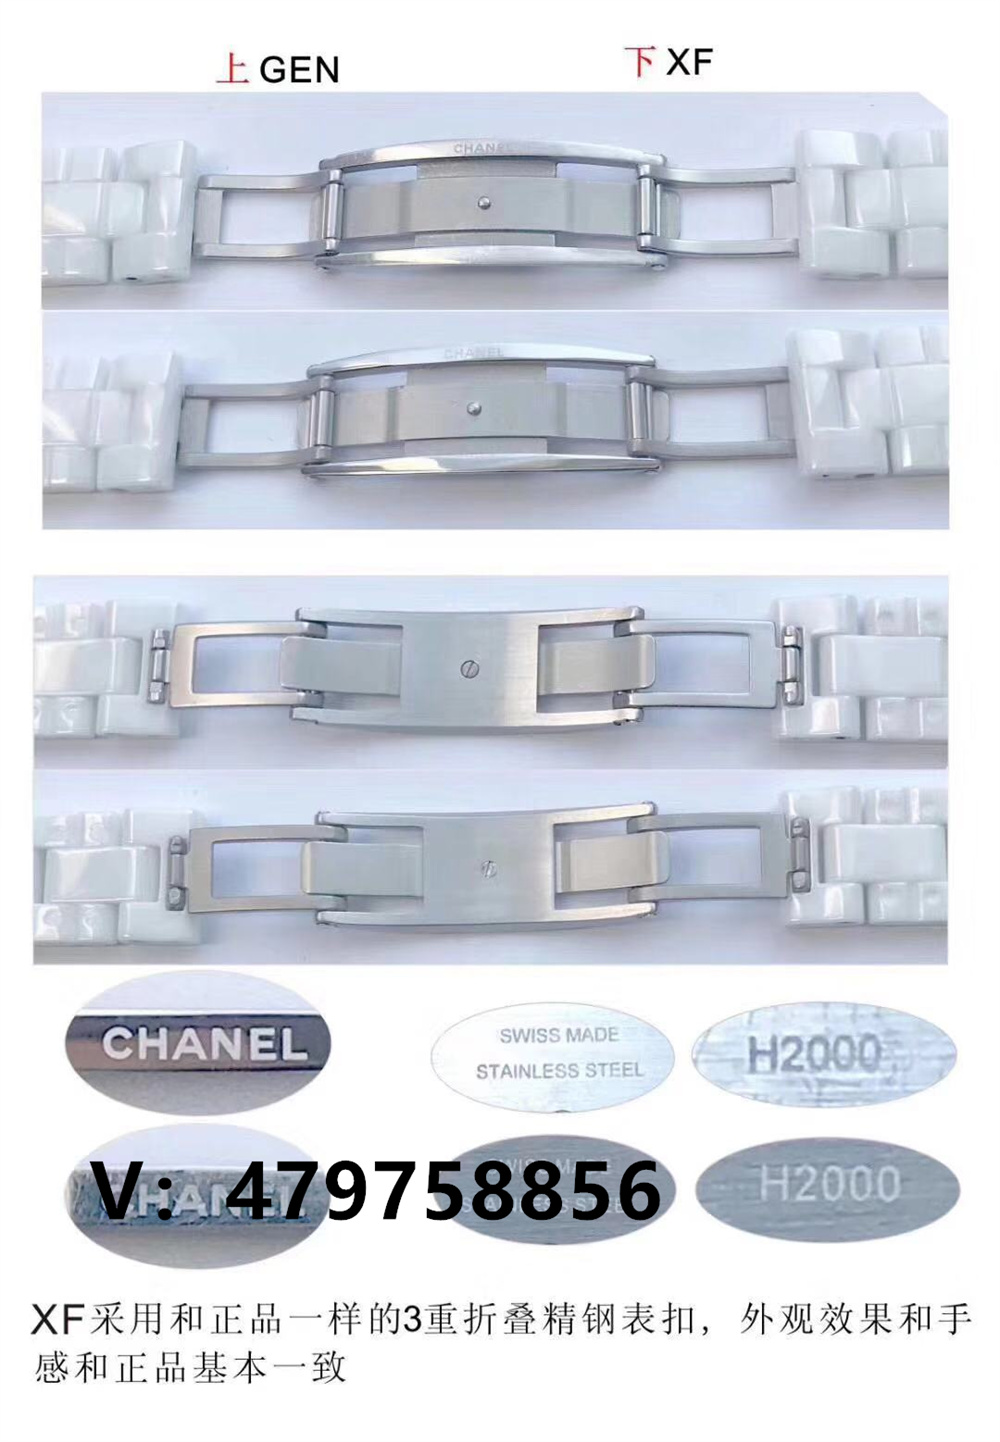 XF厂香奈儿J12女士陶瓷表对比正品评测,瑞士石英机芯插图11